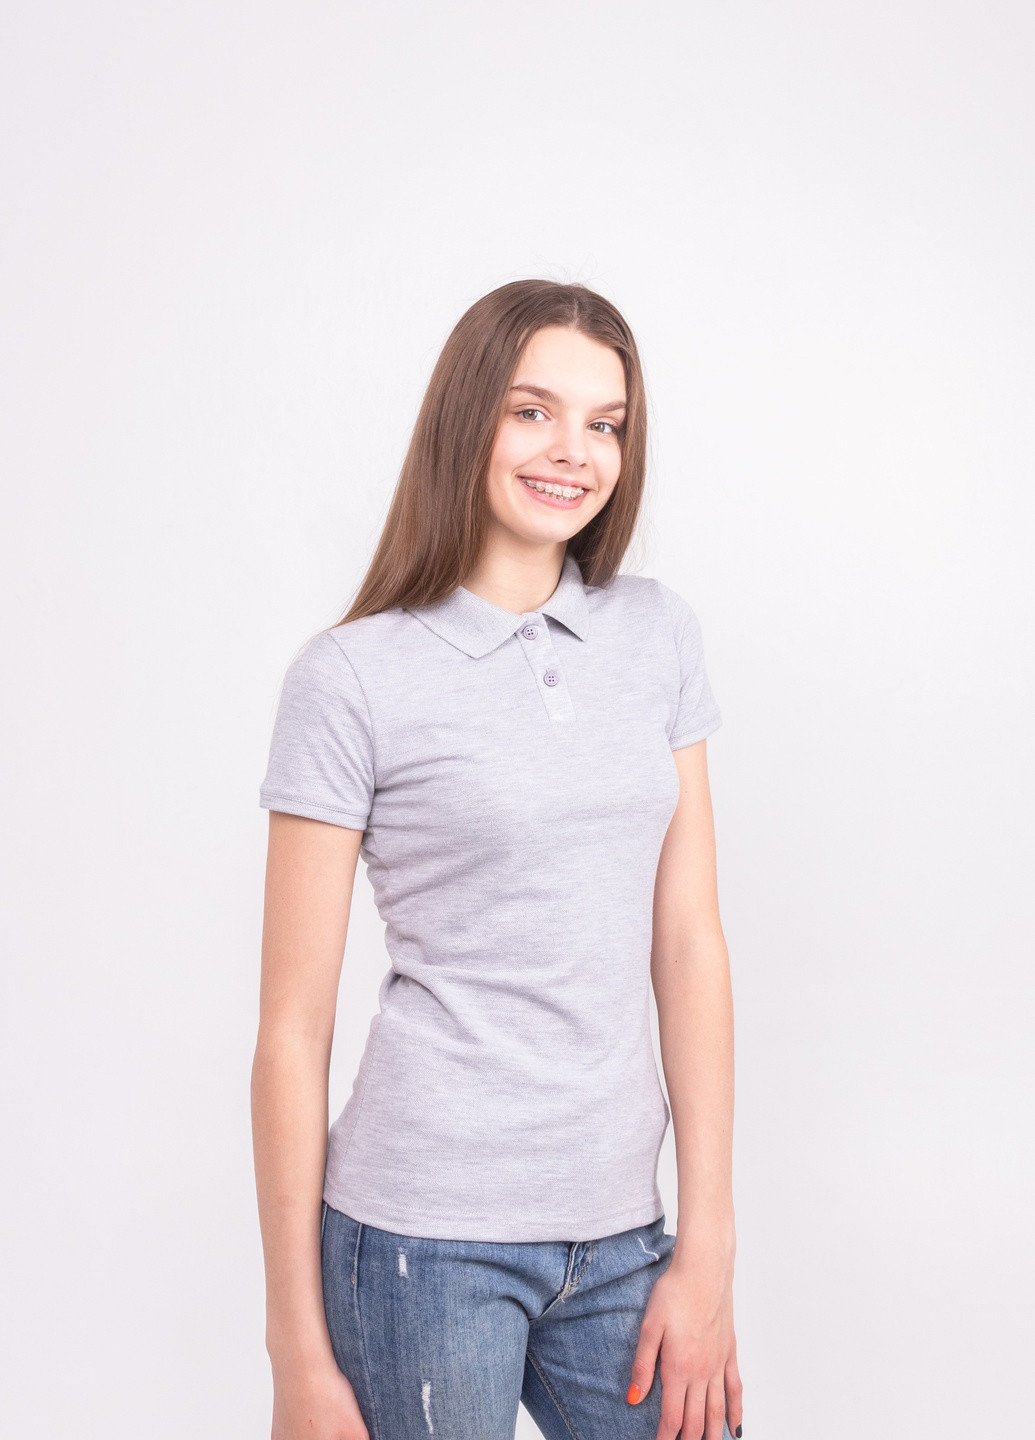 Светло-серая женская футболка-футболка поло женская TvoePolo однотонная